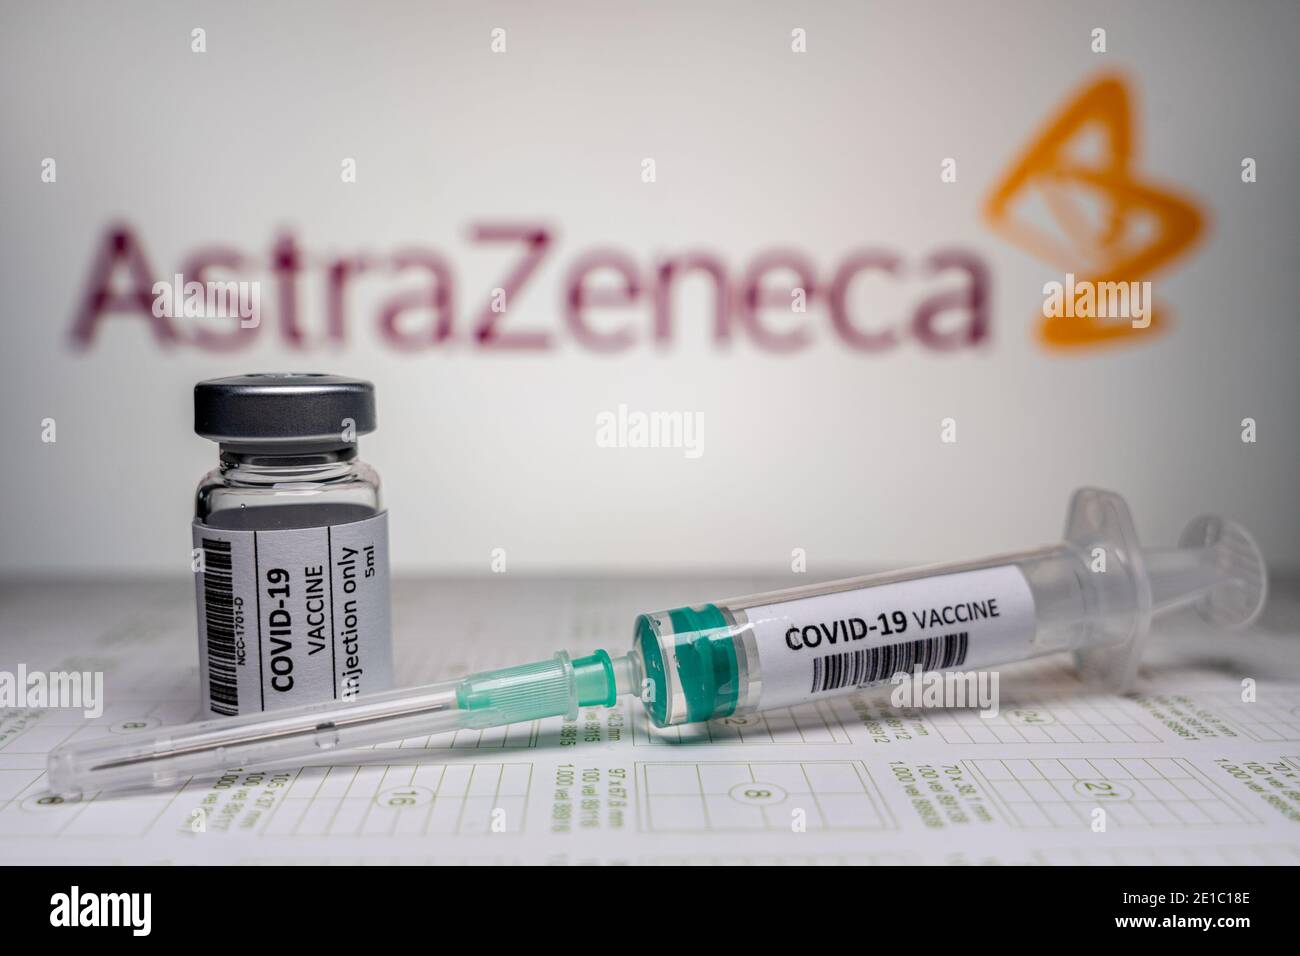 NIMÈGUE, PAYS-BAS - JANVIER 5 : illustration du coronavirus / vaccin Covid-19. Flacon et seringue devant l'illustration du logo AstraZeneca /. Vaccin Banque D'Images